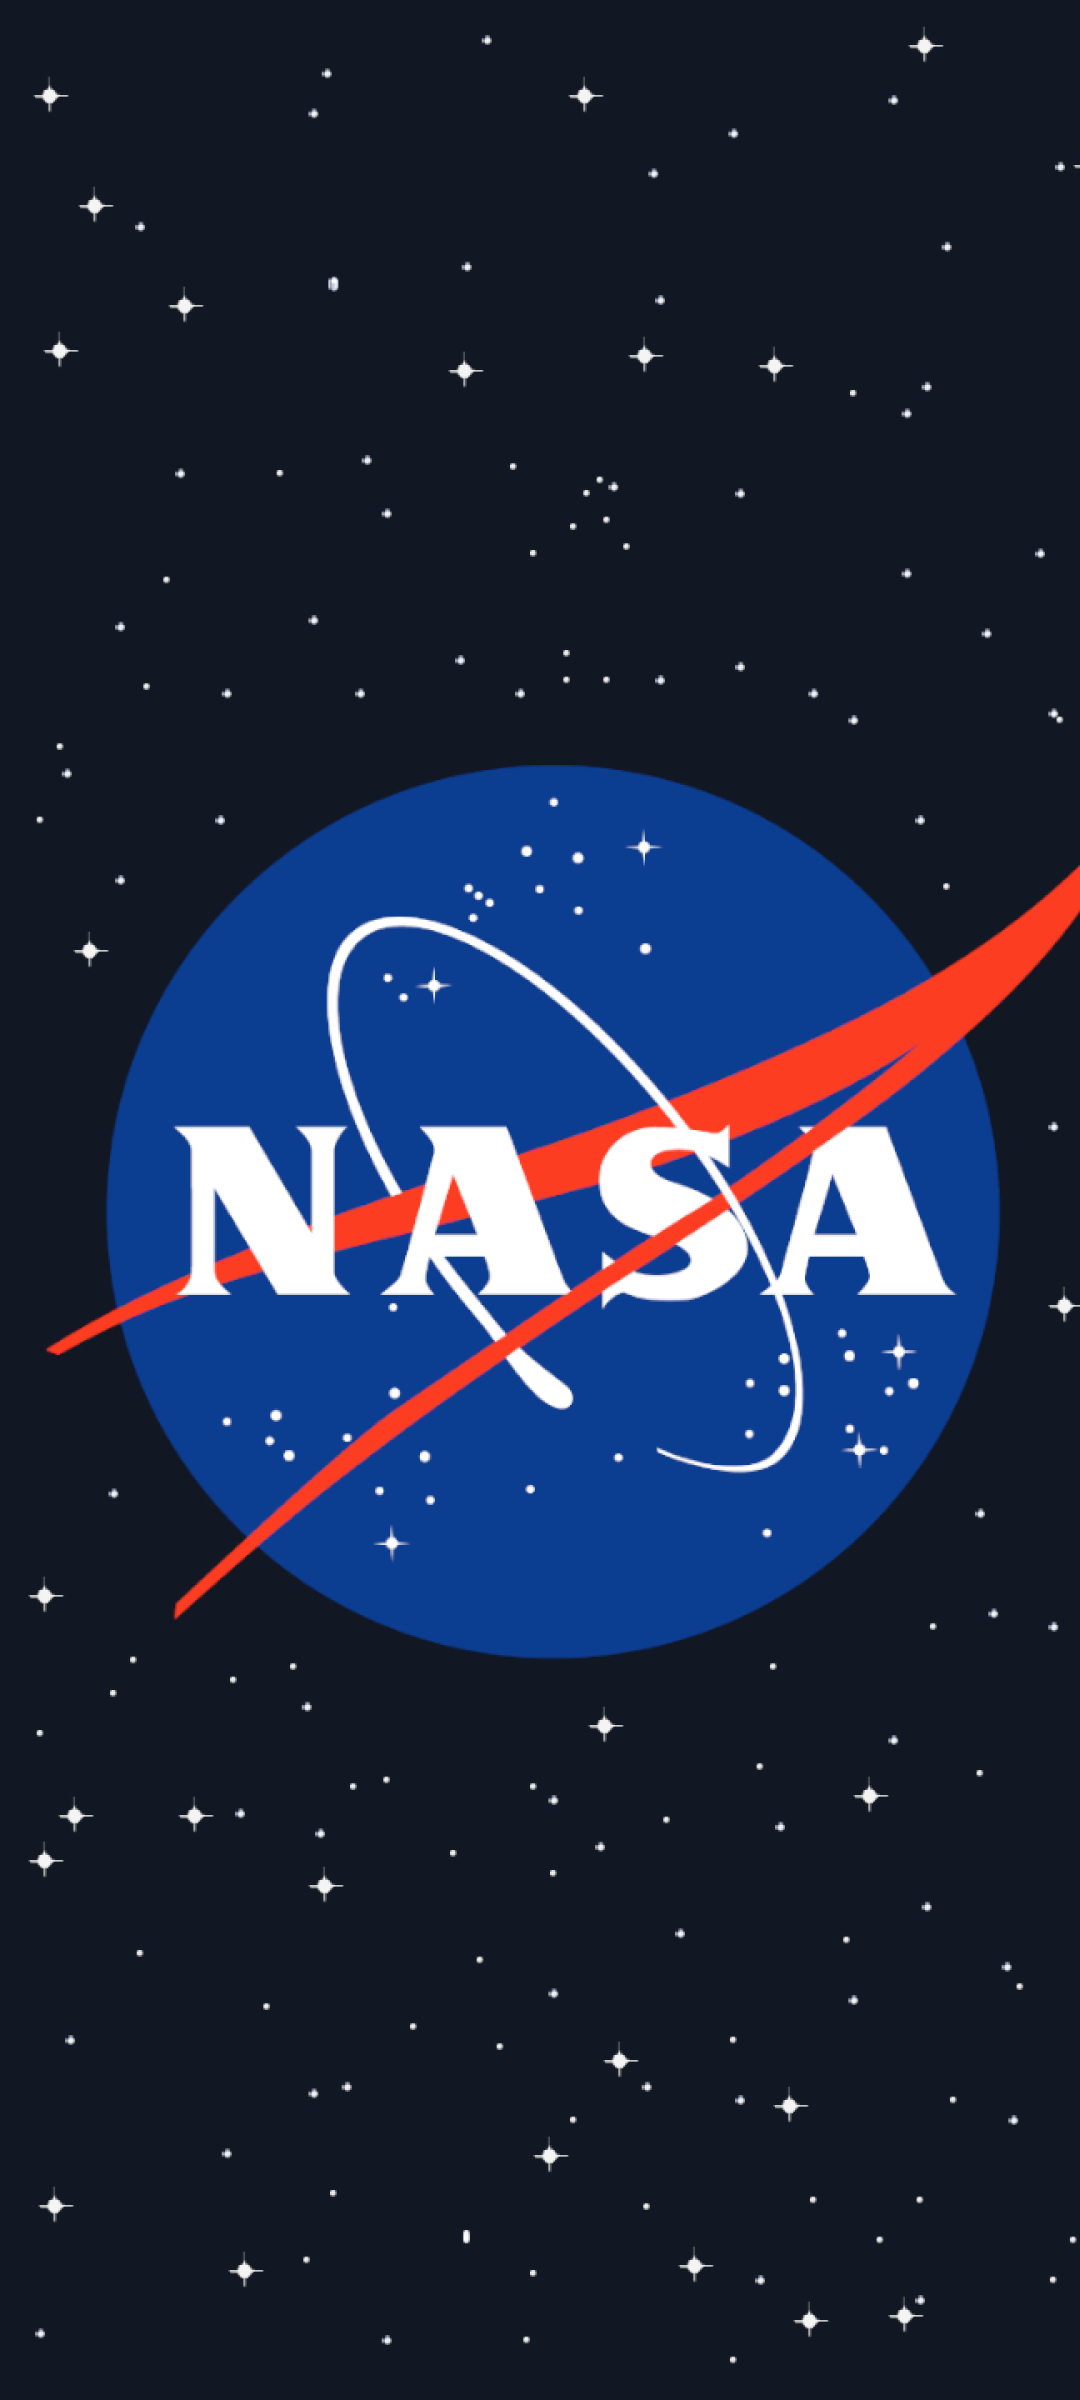 NASA miễn phí toàn bộ thư viện ảnh video và âm thanh anh em mau vào xem